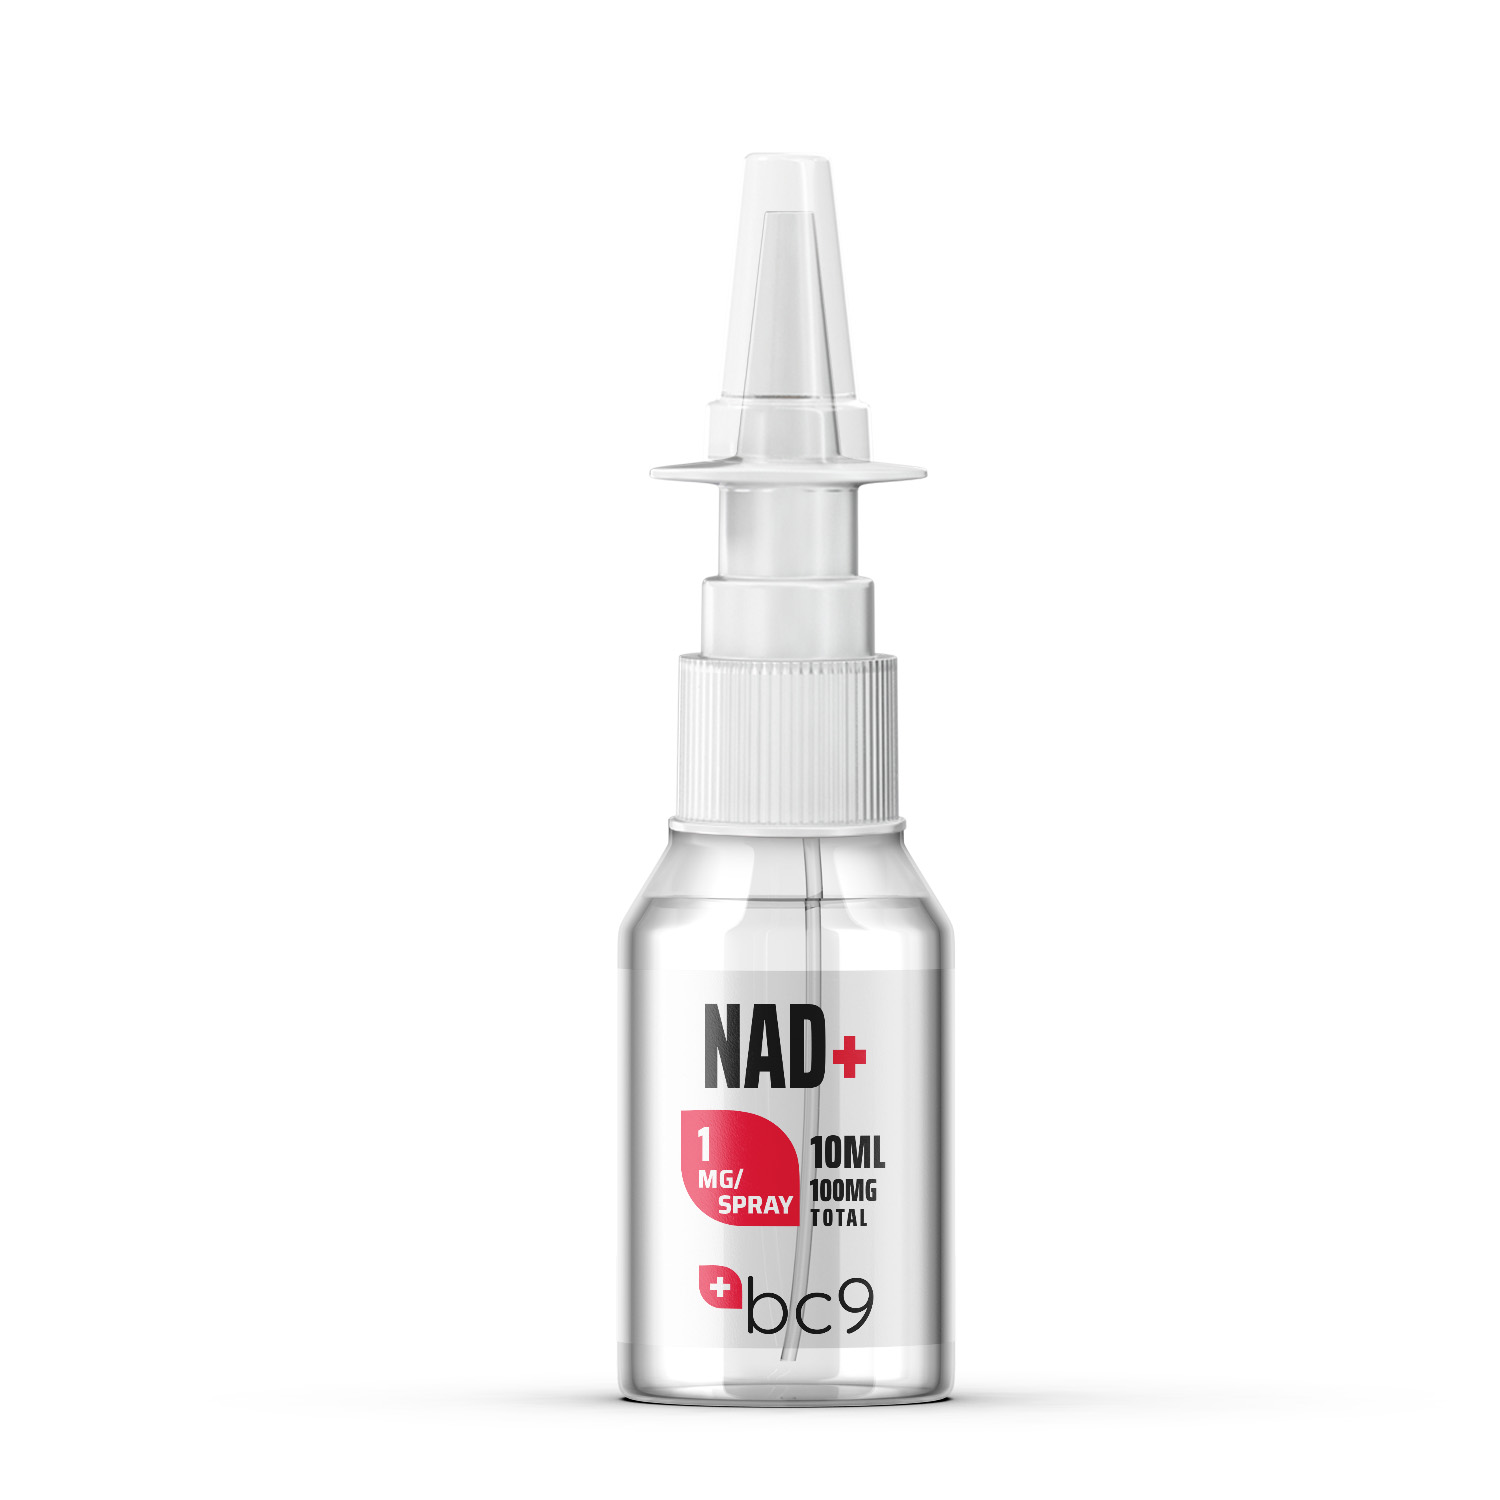 NAD+ (Nicotinamide Adenine Dinucleotide) Nasal Spray For Sale